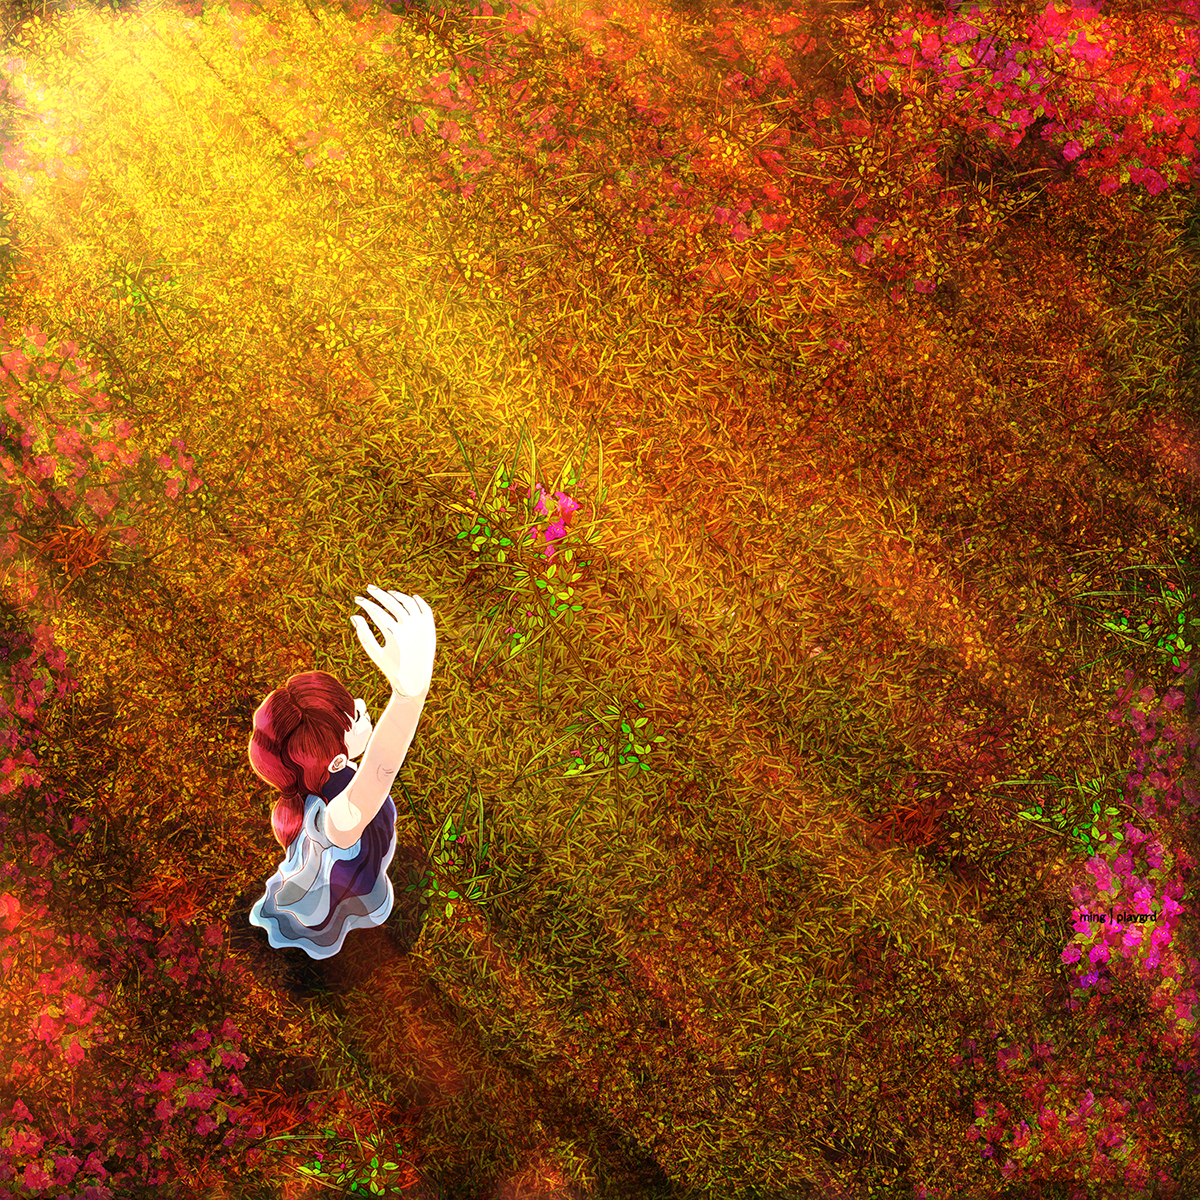 DAUGHTER Sun dancing Flowers grass